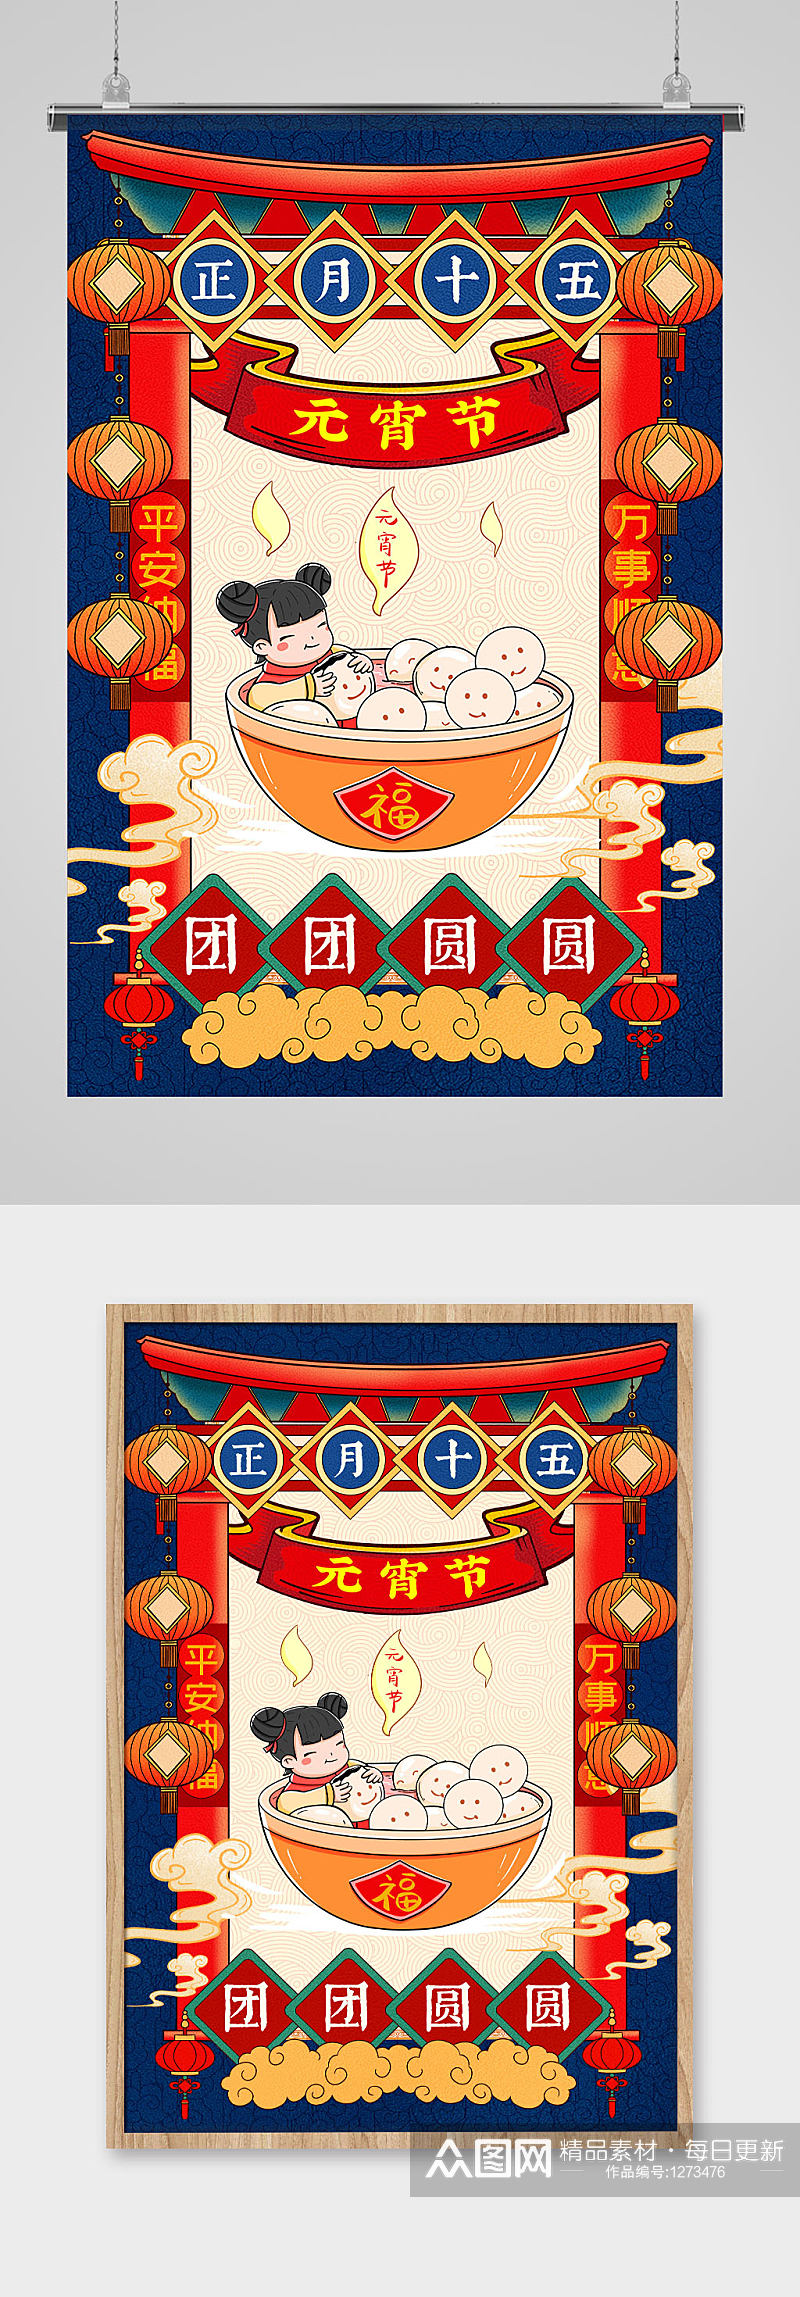 中国传统民俗插画风之元宵节海报素材